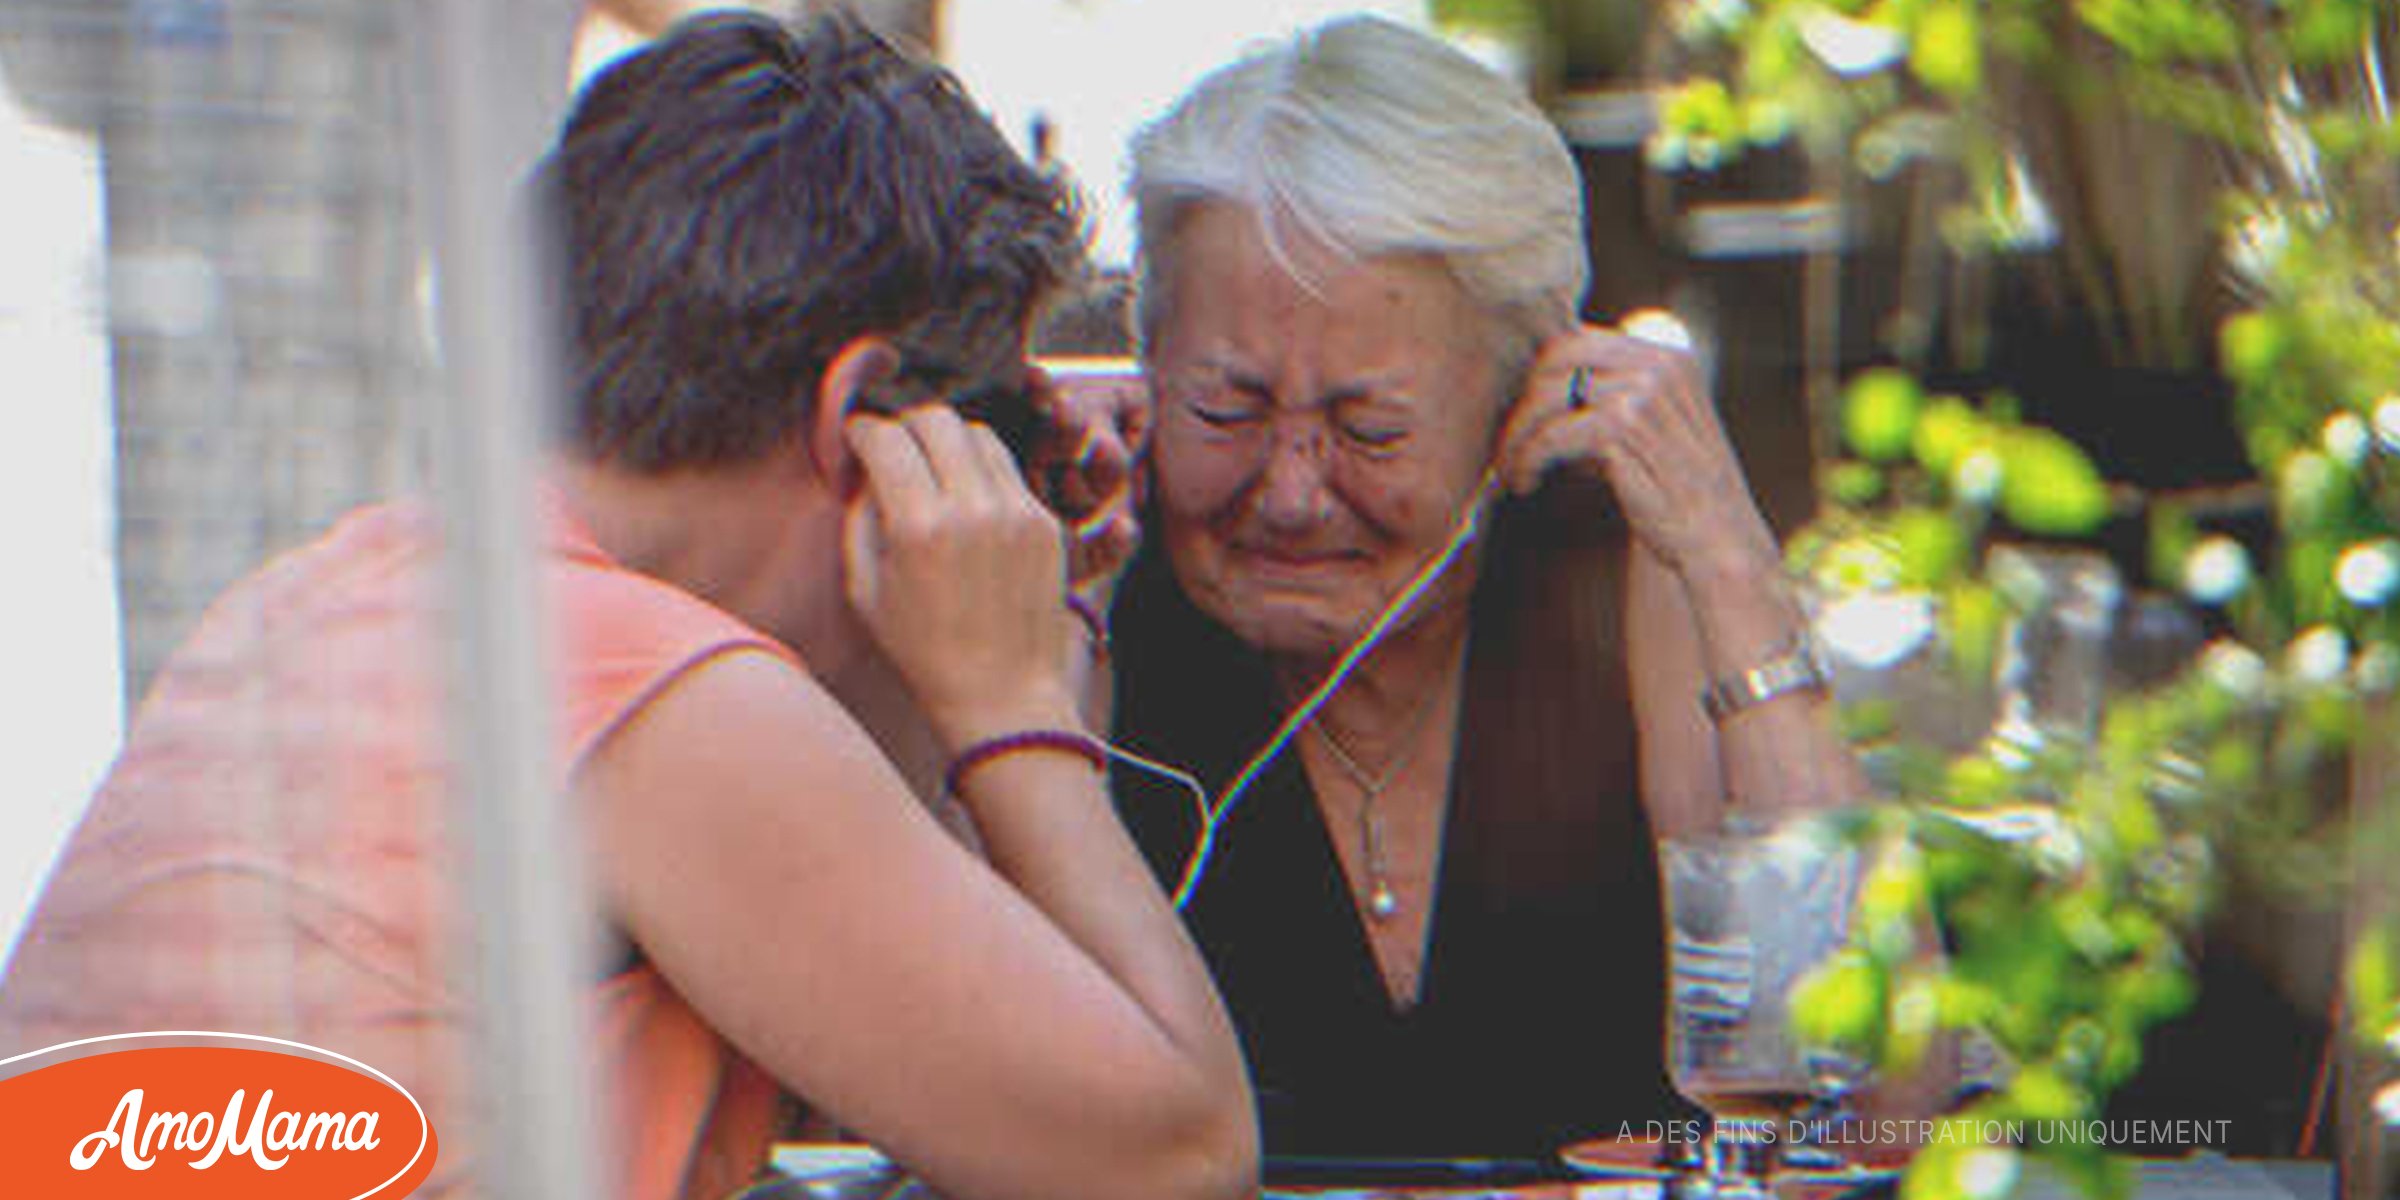 Une mère en deuil qui pleure en écoutant le dernier message de son fils se réveille au son d’une voix qui l’appelle “Maman” – Histoire du jour